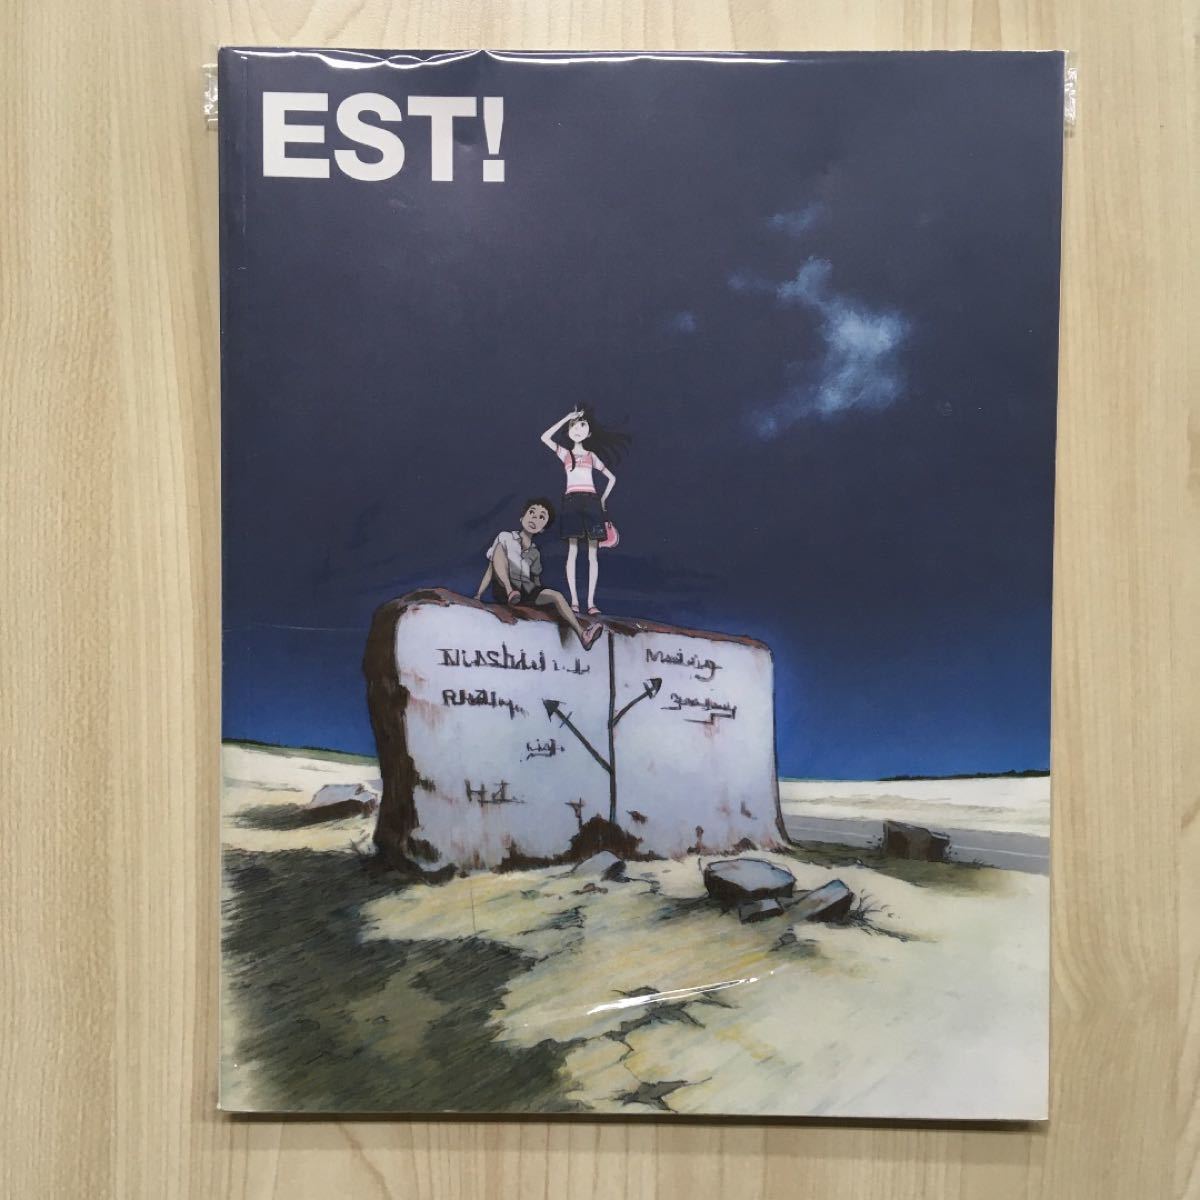 吉田健一 画集 CCMS『EST!』同人誌 イラスト集 アニメーター 趣味